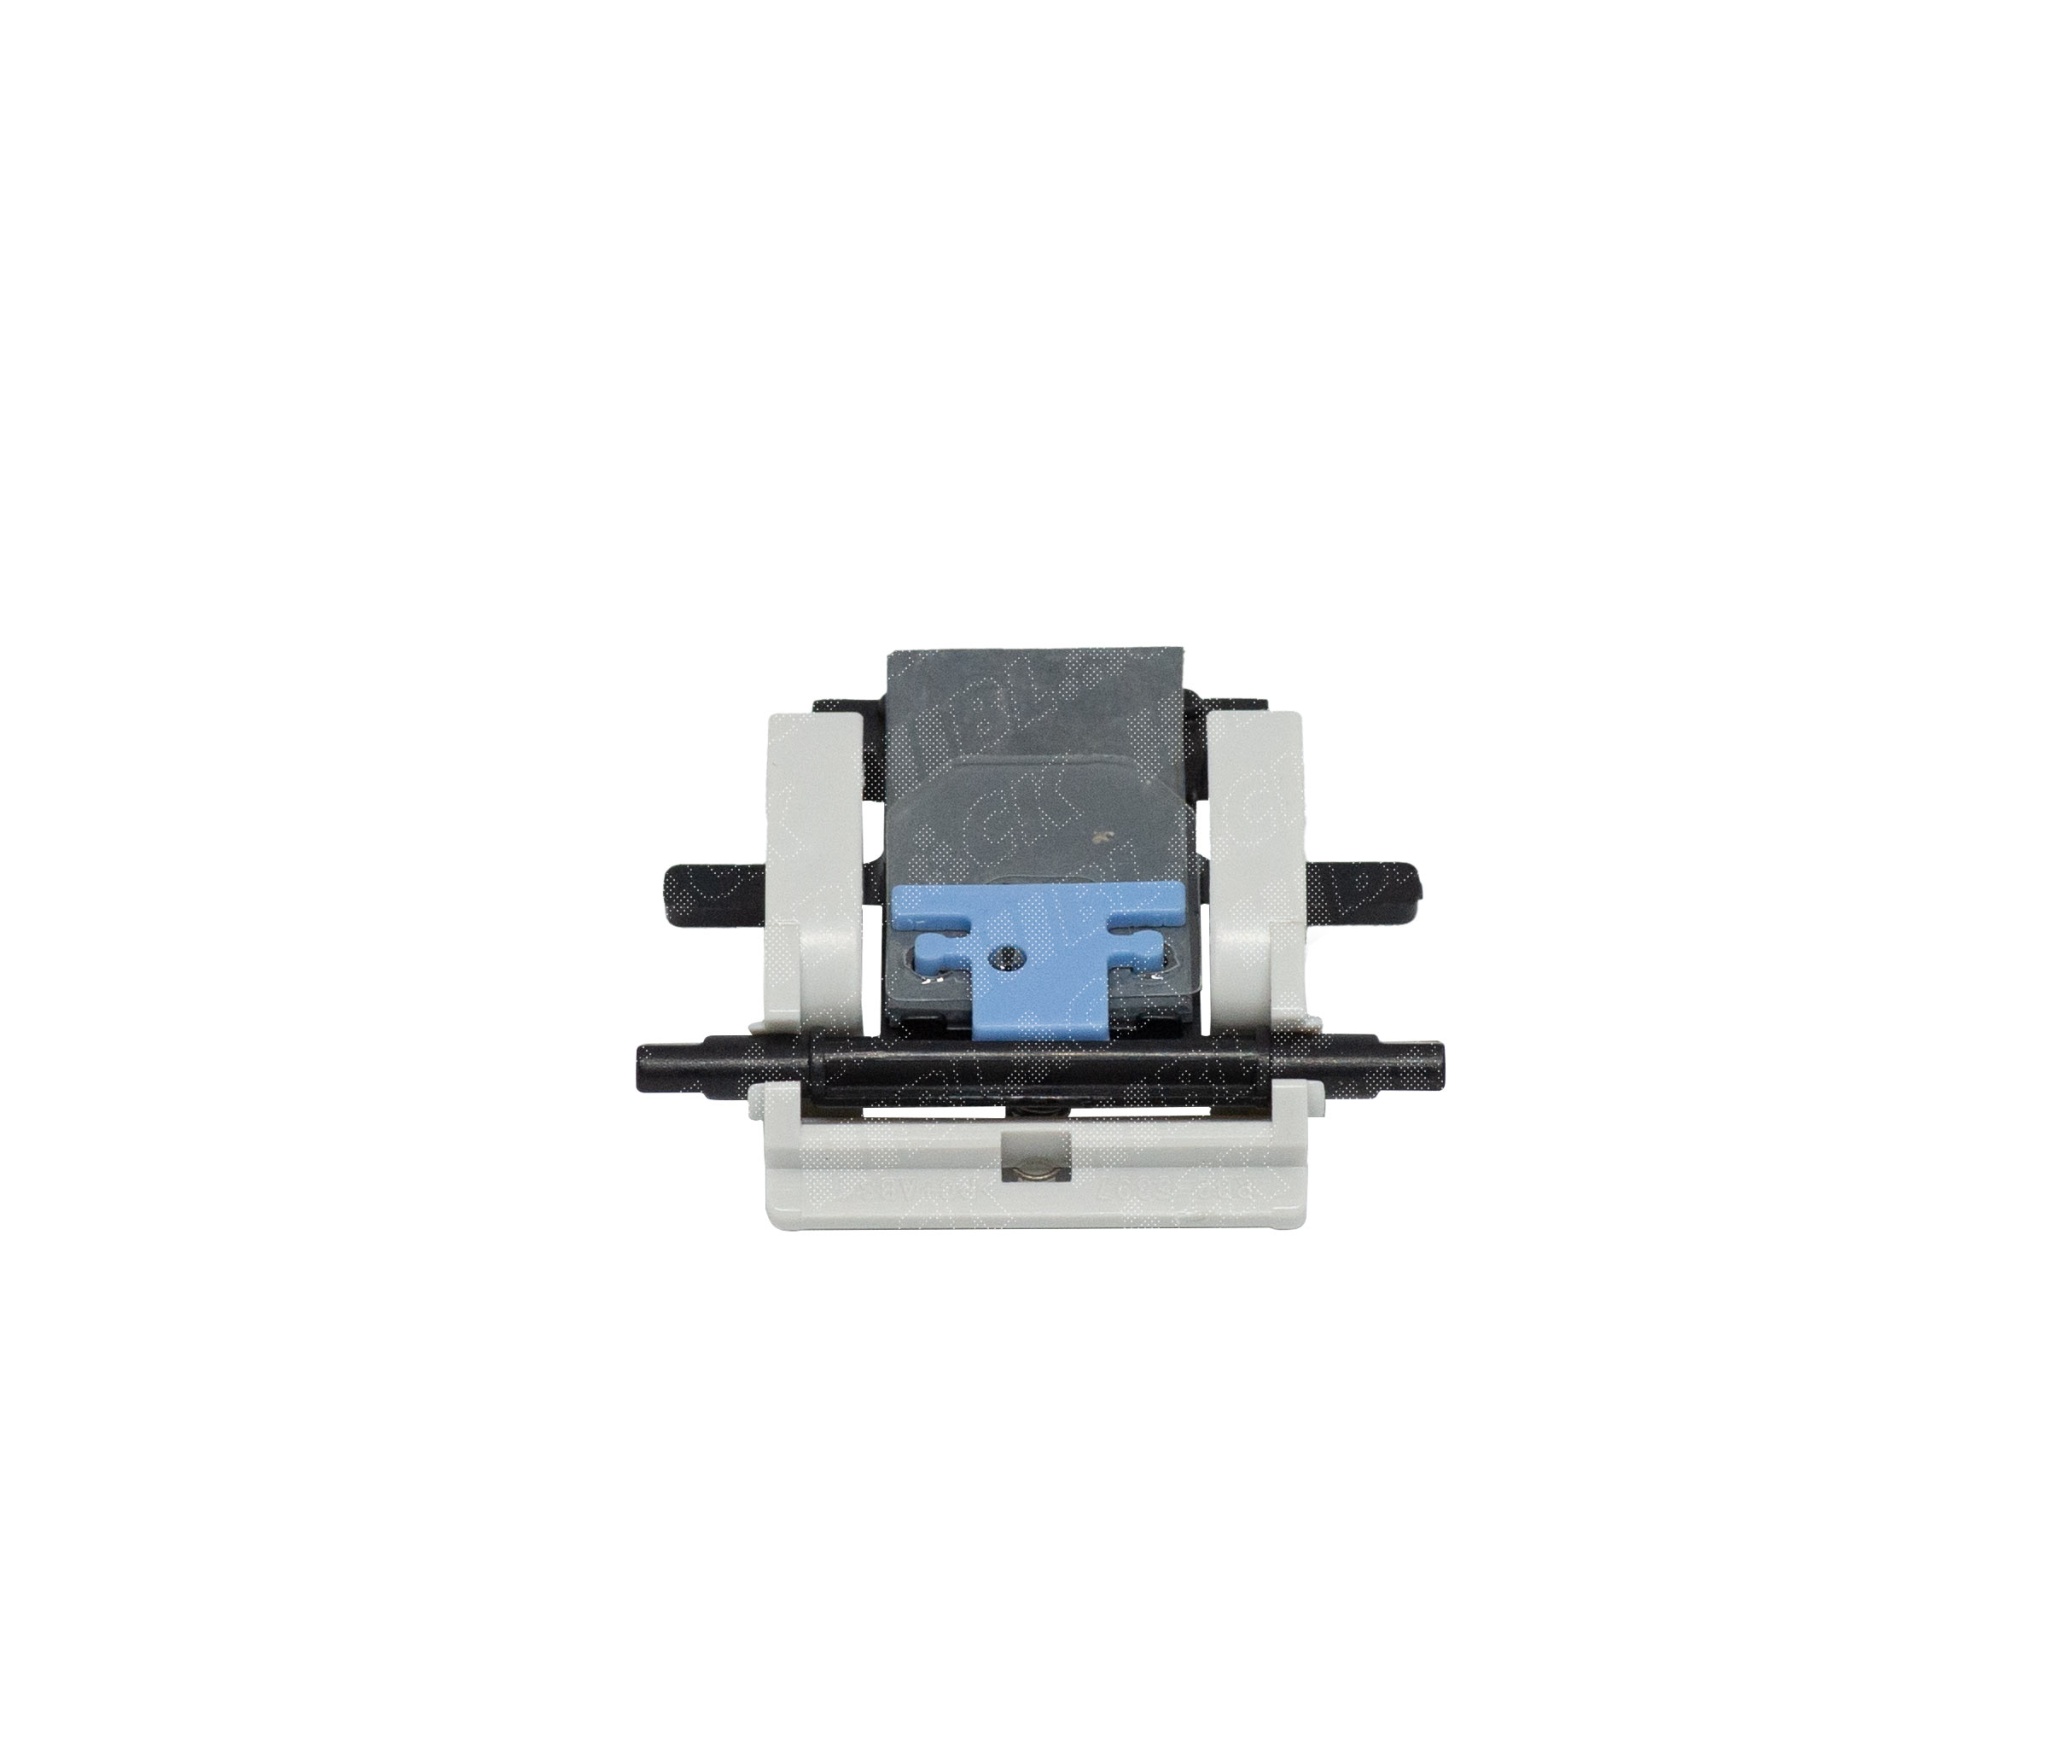 Тормозная площадка сканера в сборе Hi-Black (RM1-0890) для HP LJ 3015/ 3050/ M1319mfp